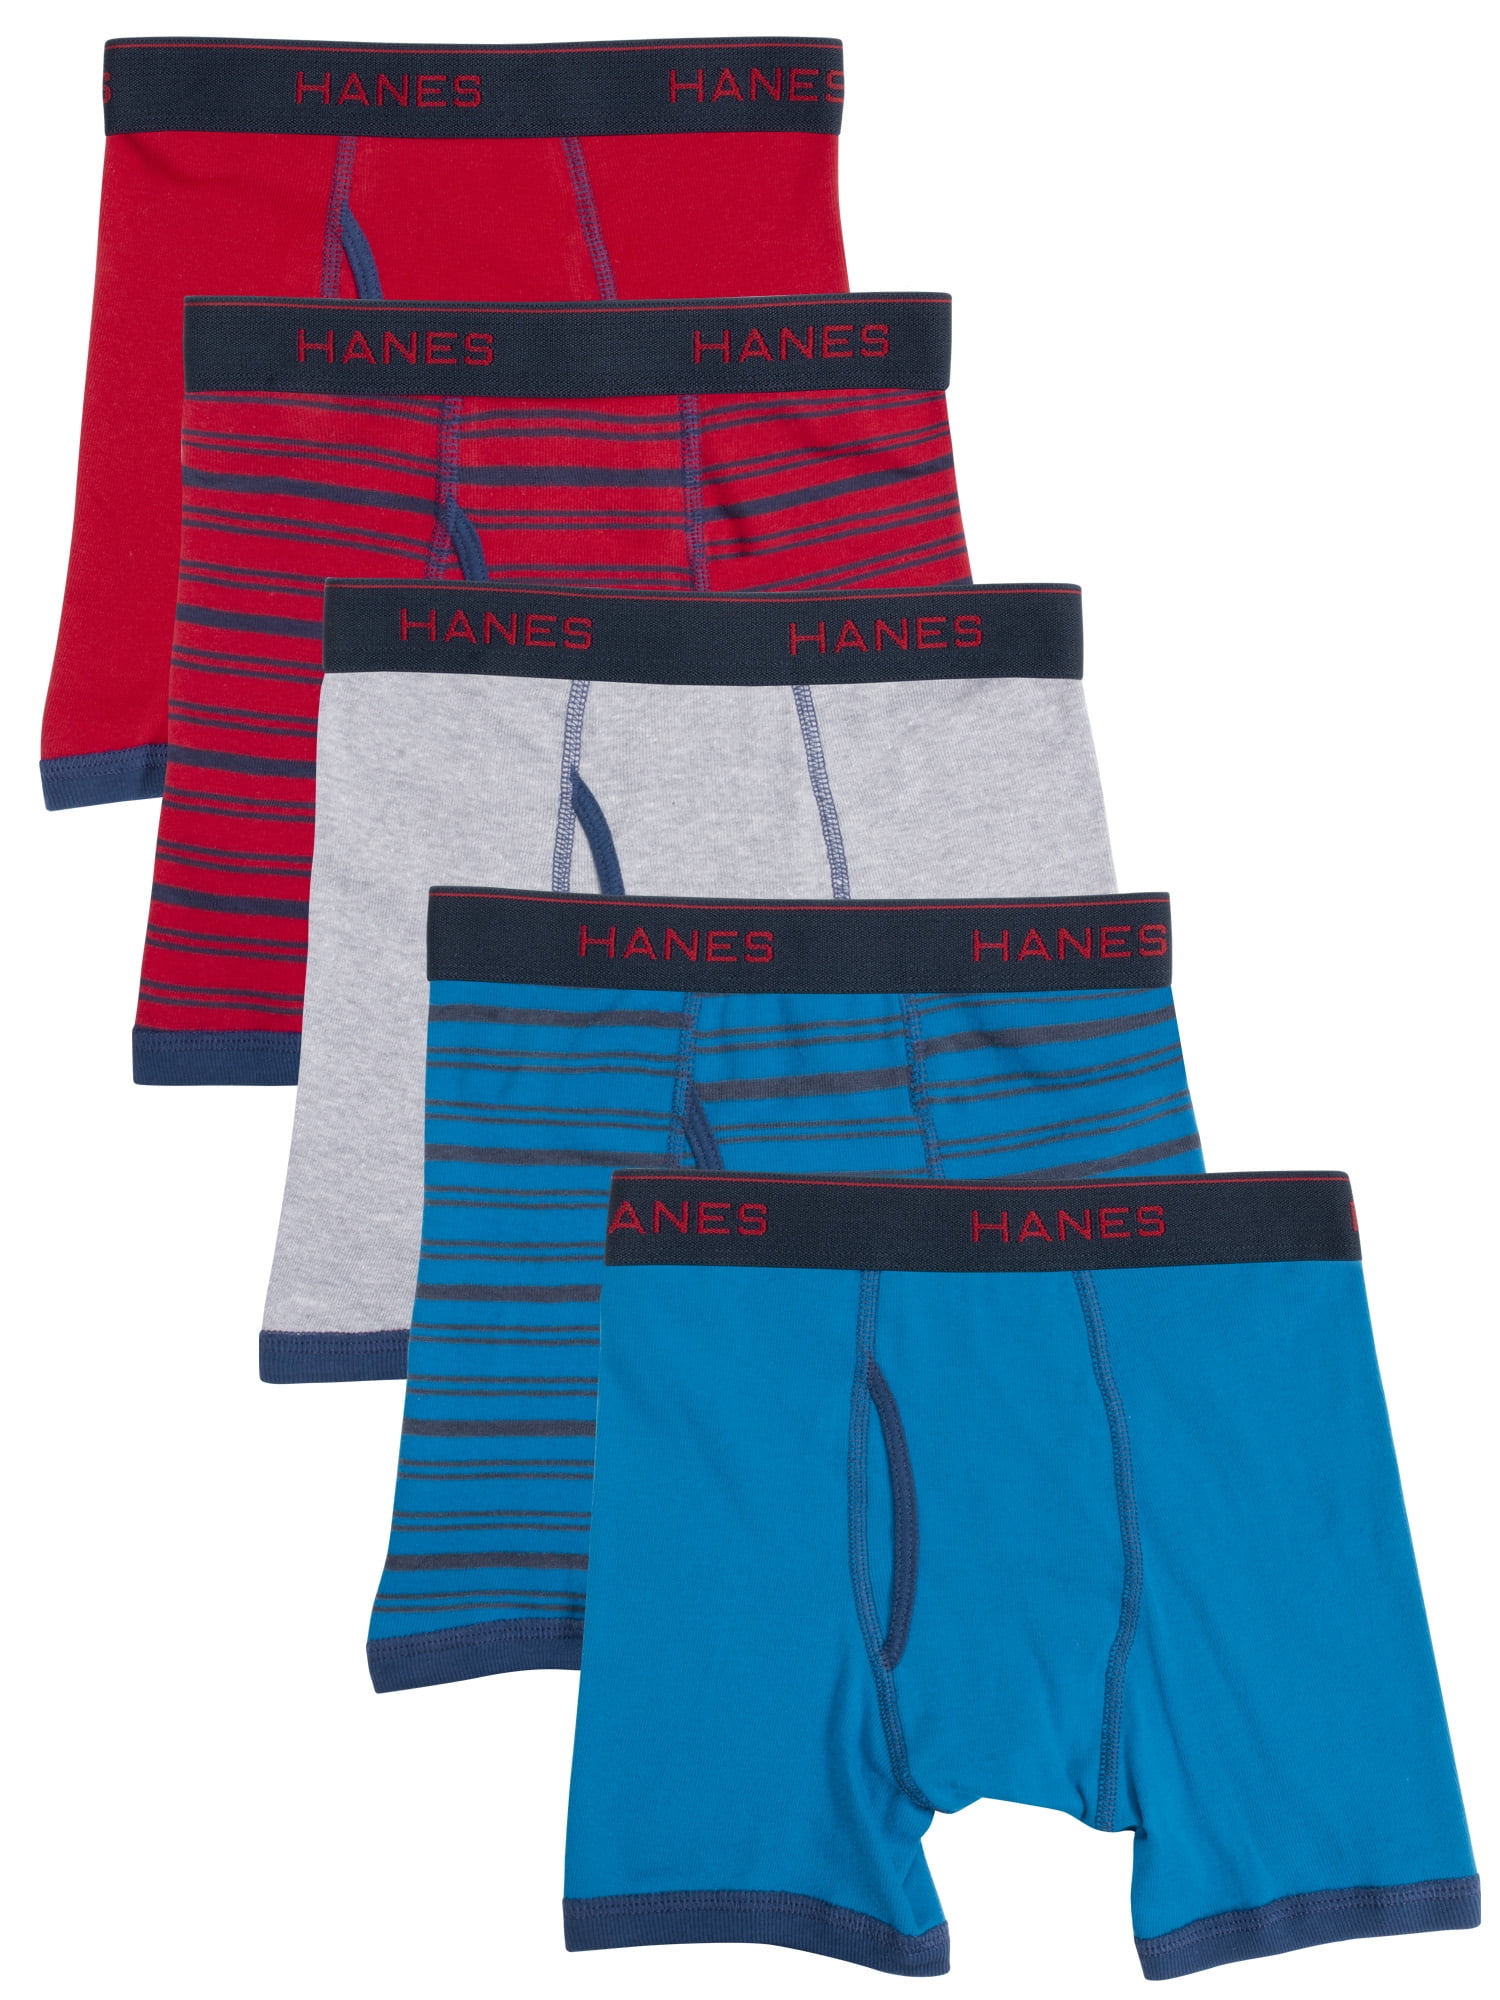 Hanes Boys' Underwear, 5 Pack Tagless ComfortSoft Boxer Briefs